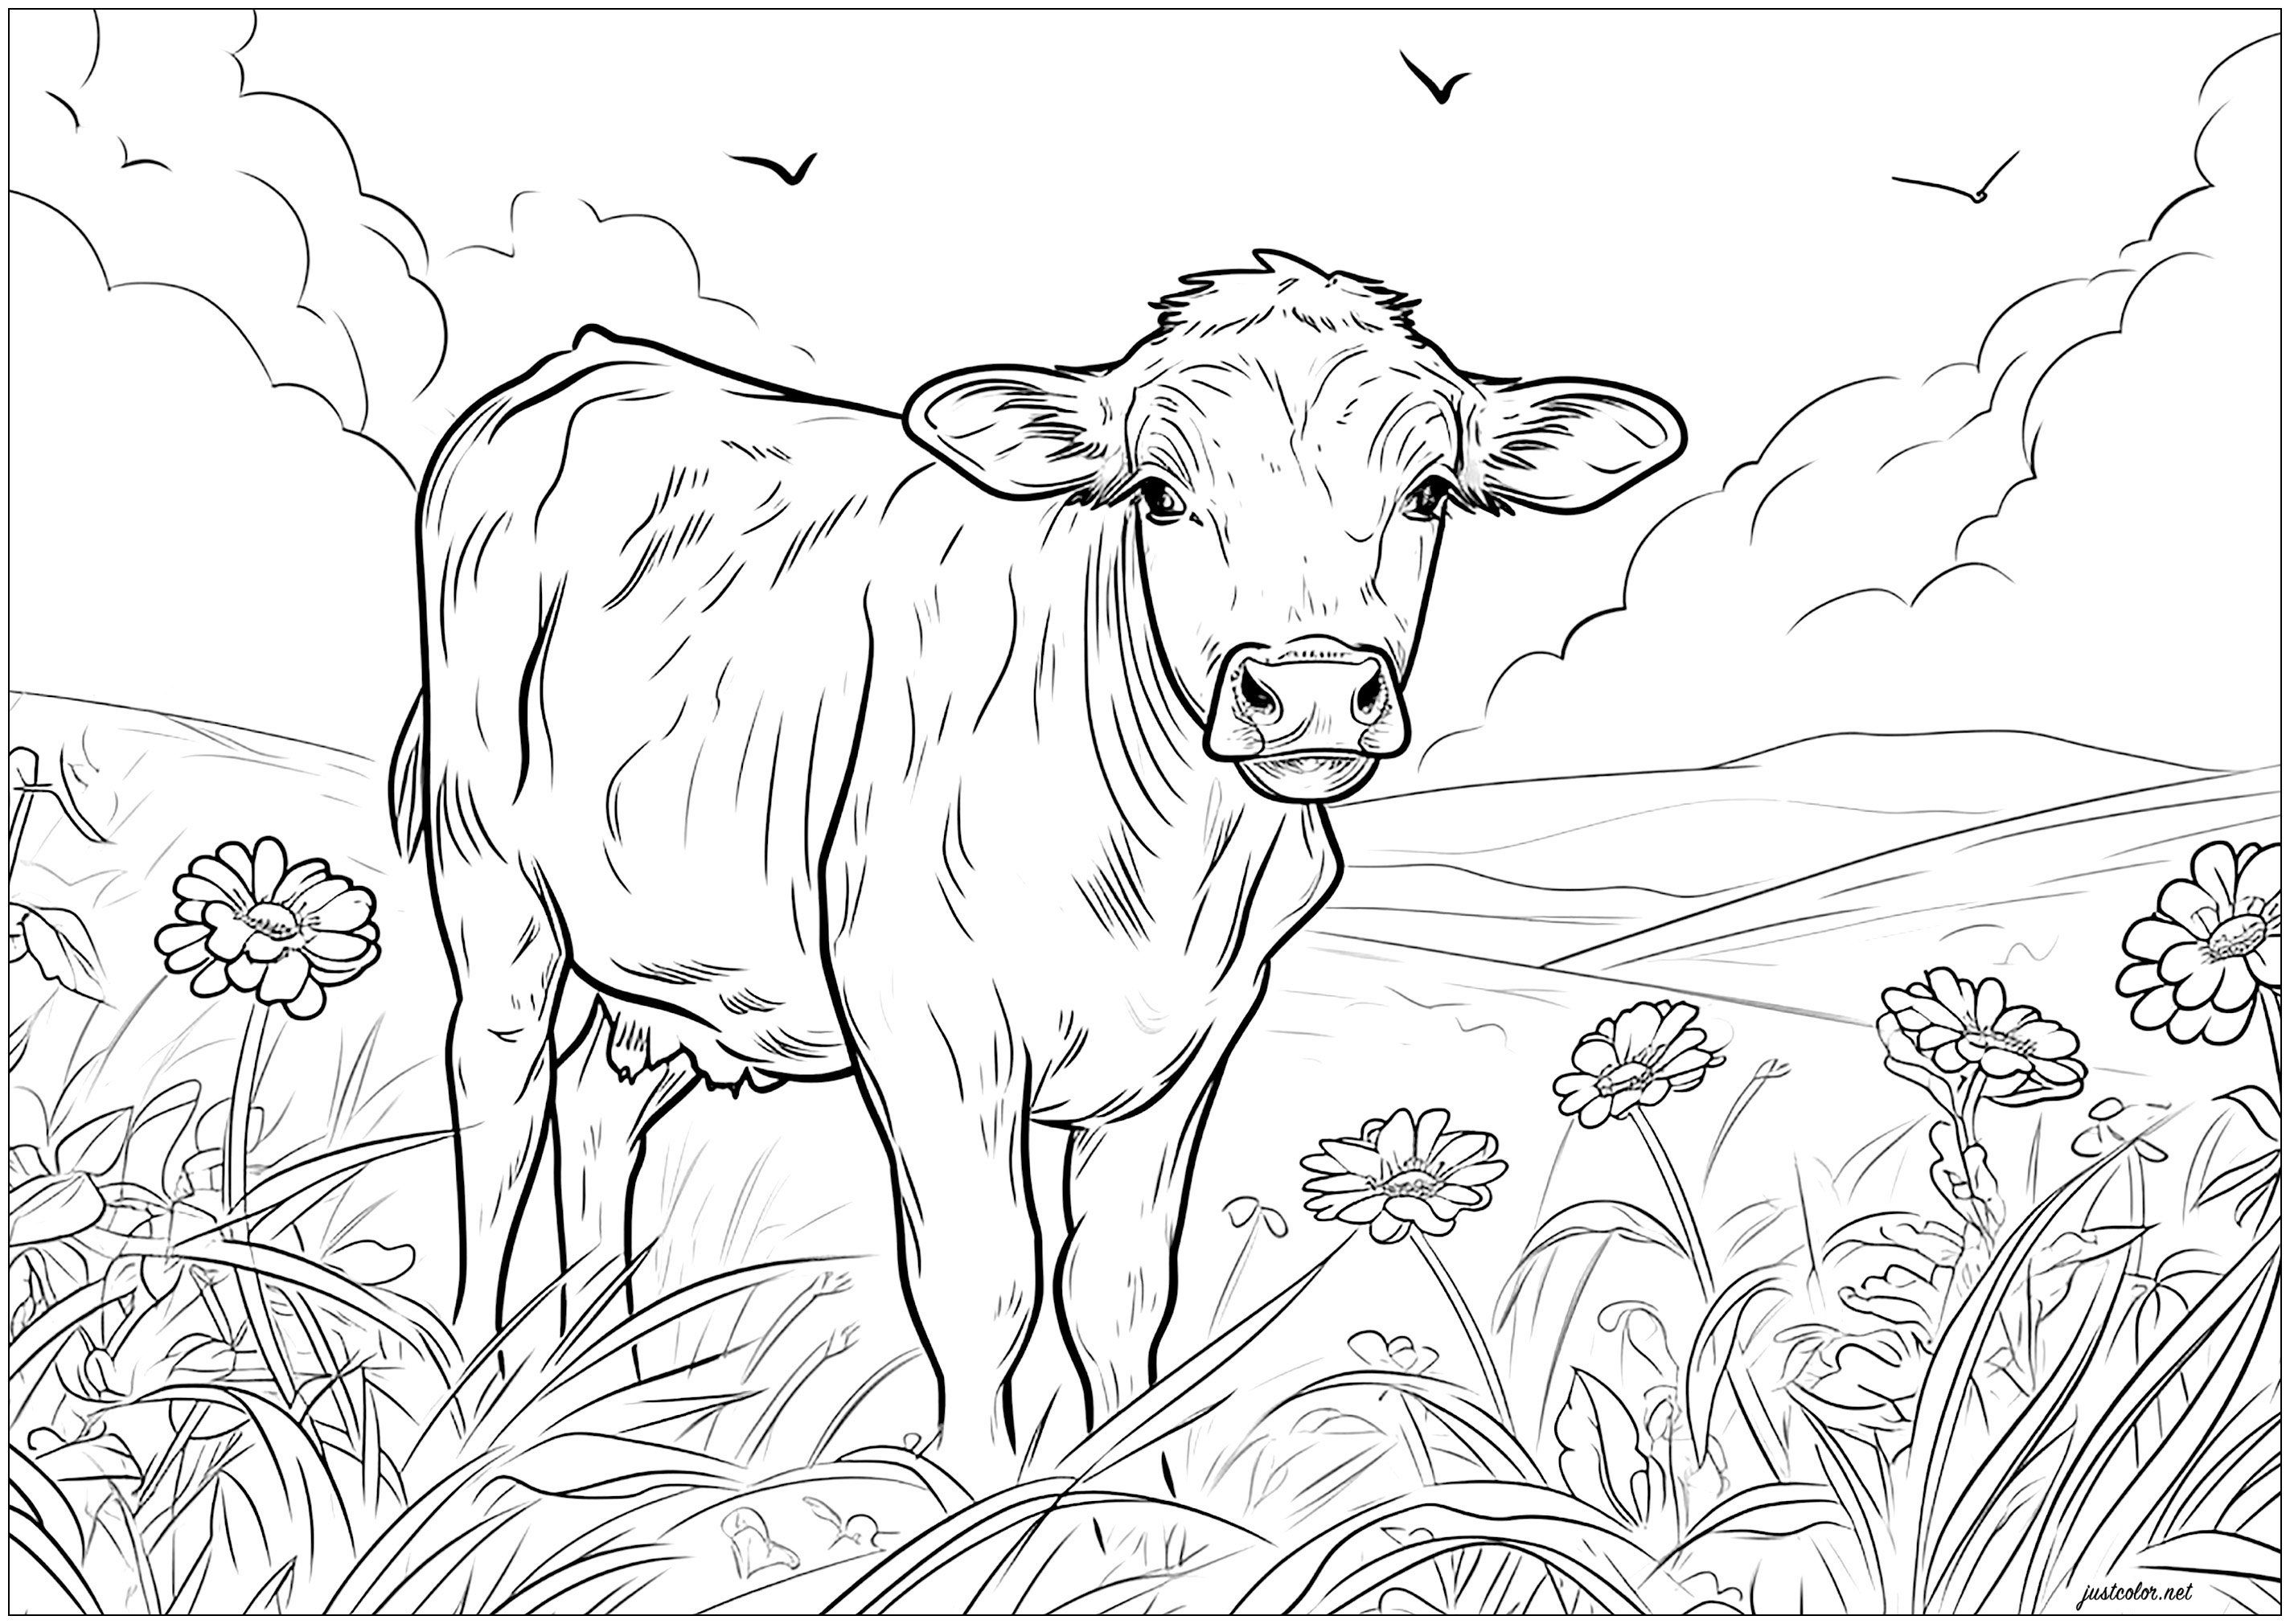 Vache dans un champs - 2